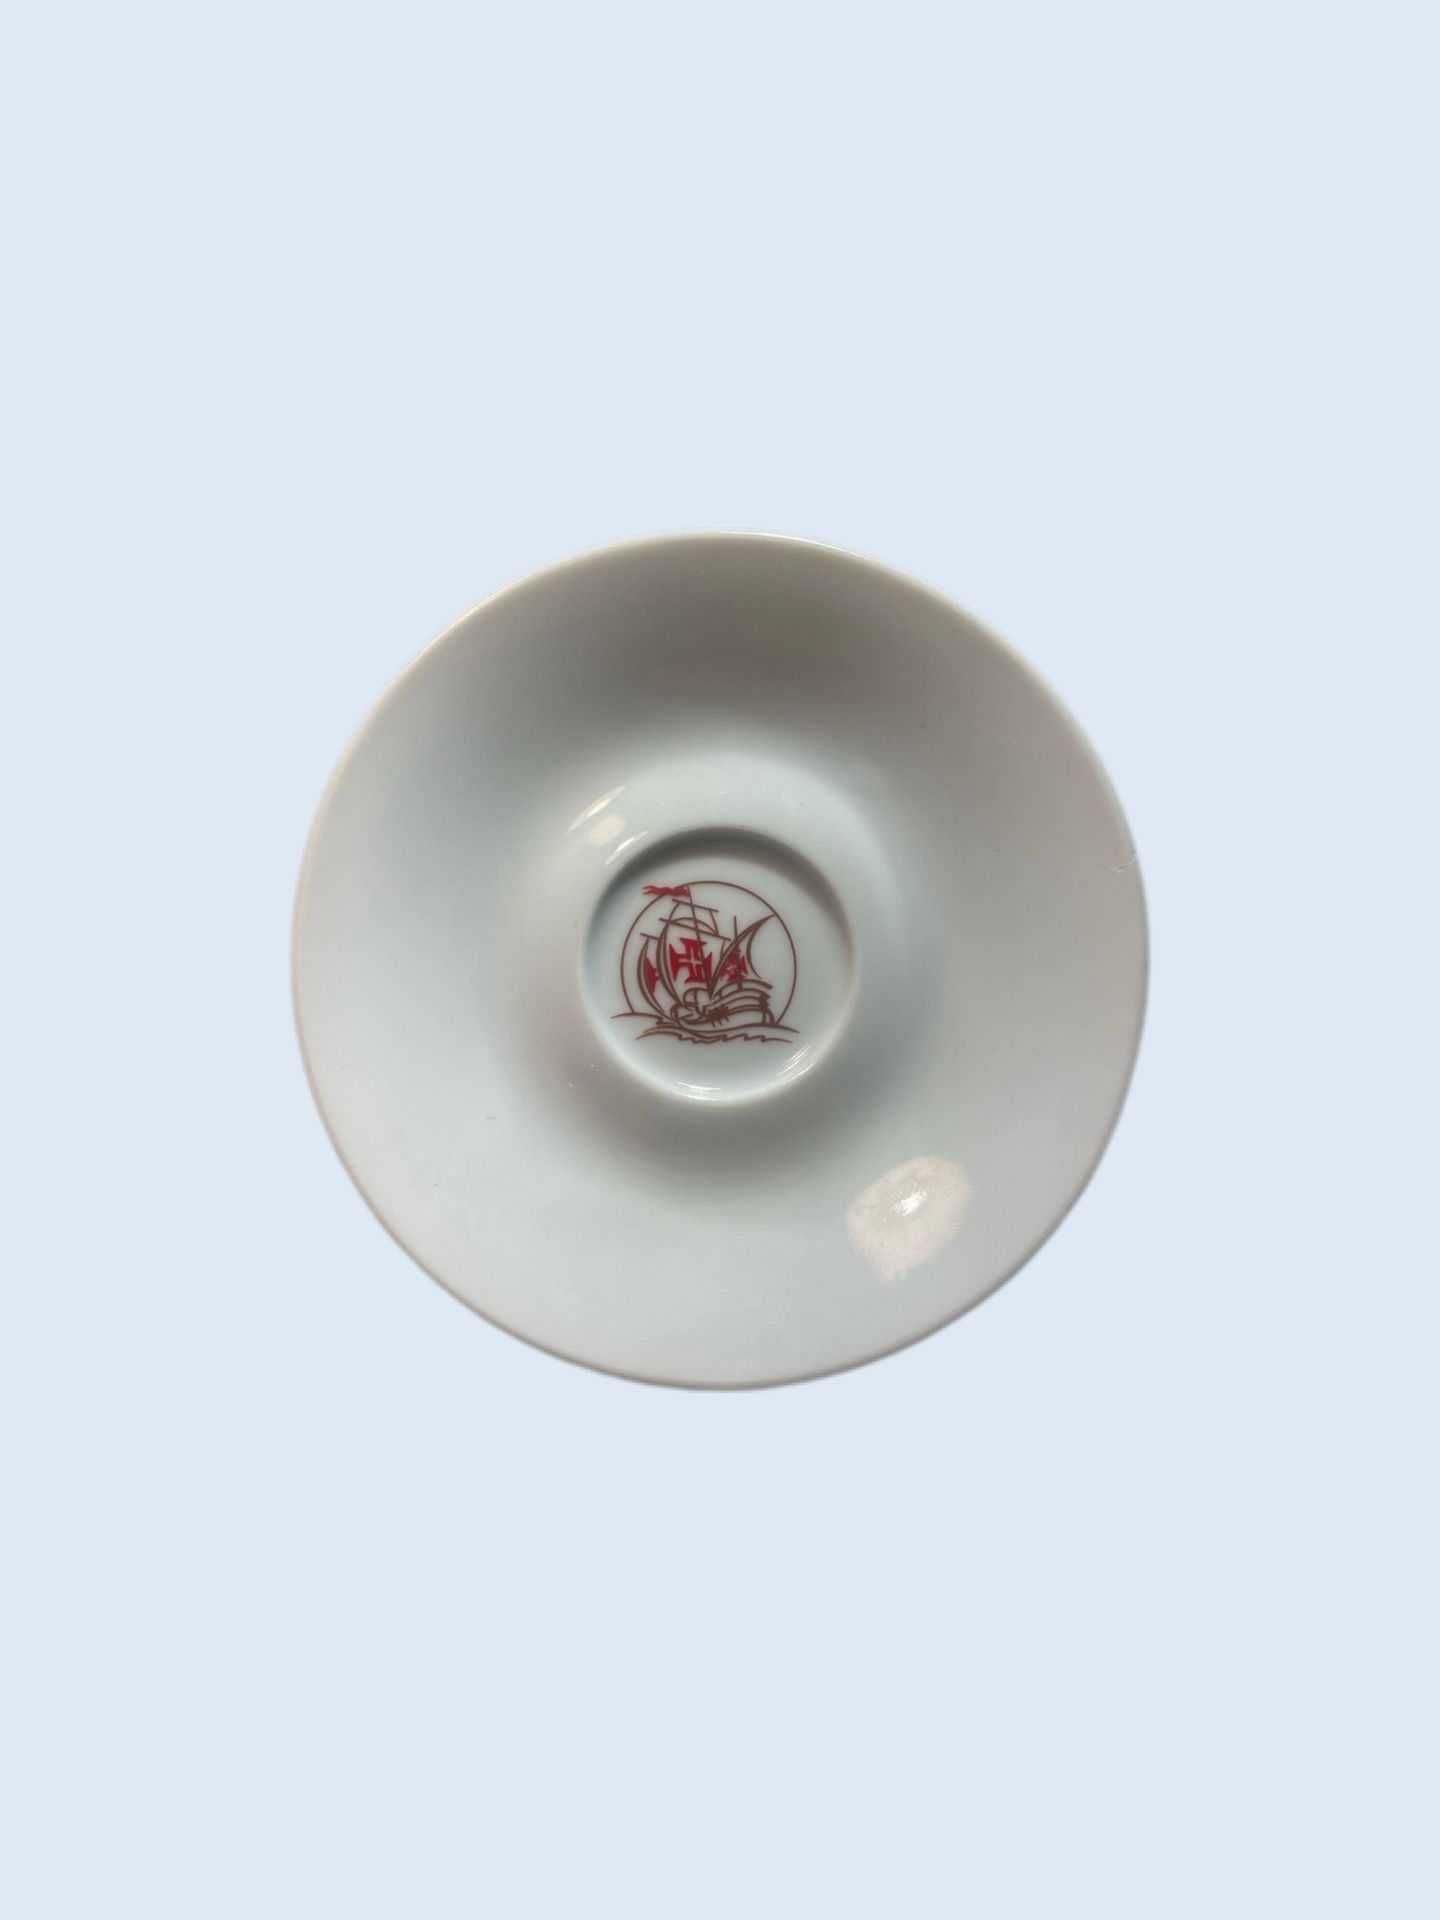 Pires porcelana gs branca com ilustração de Caravela Portuguesa